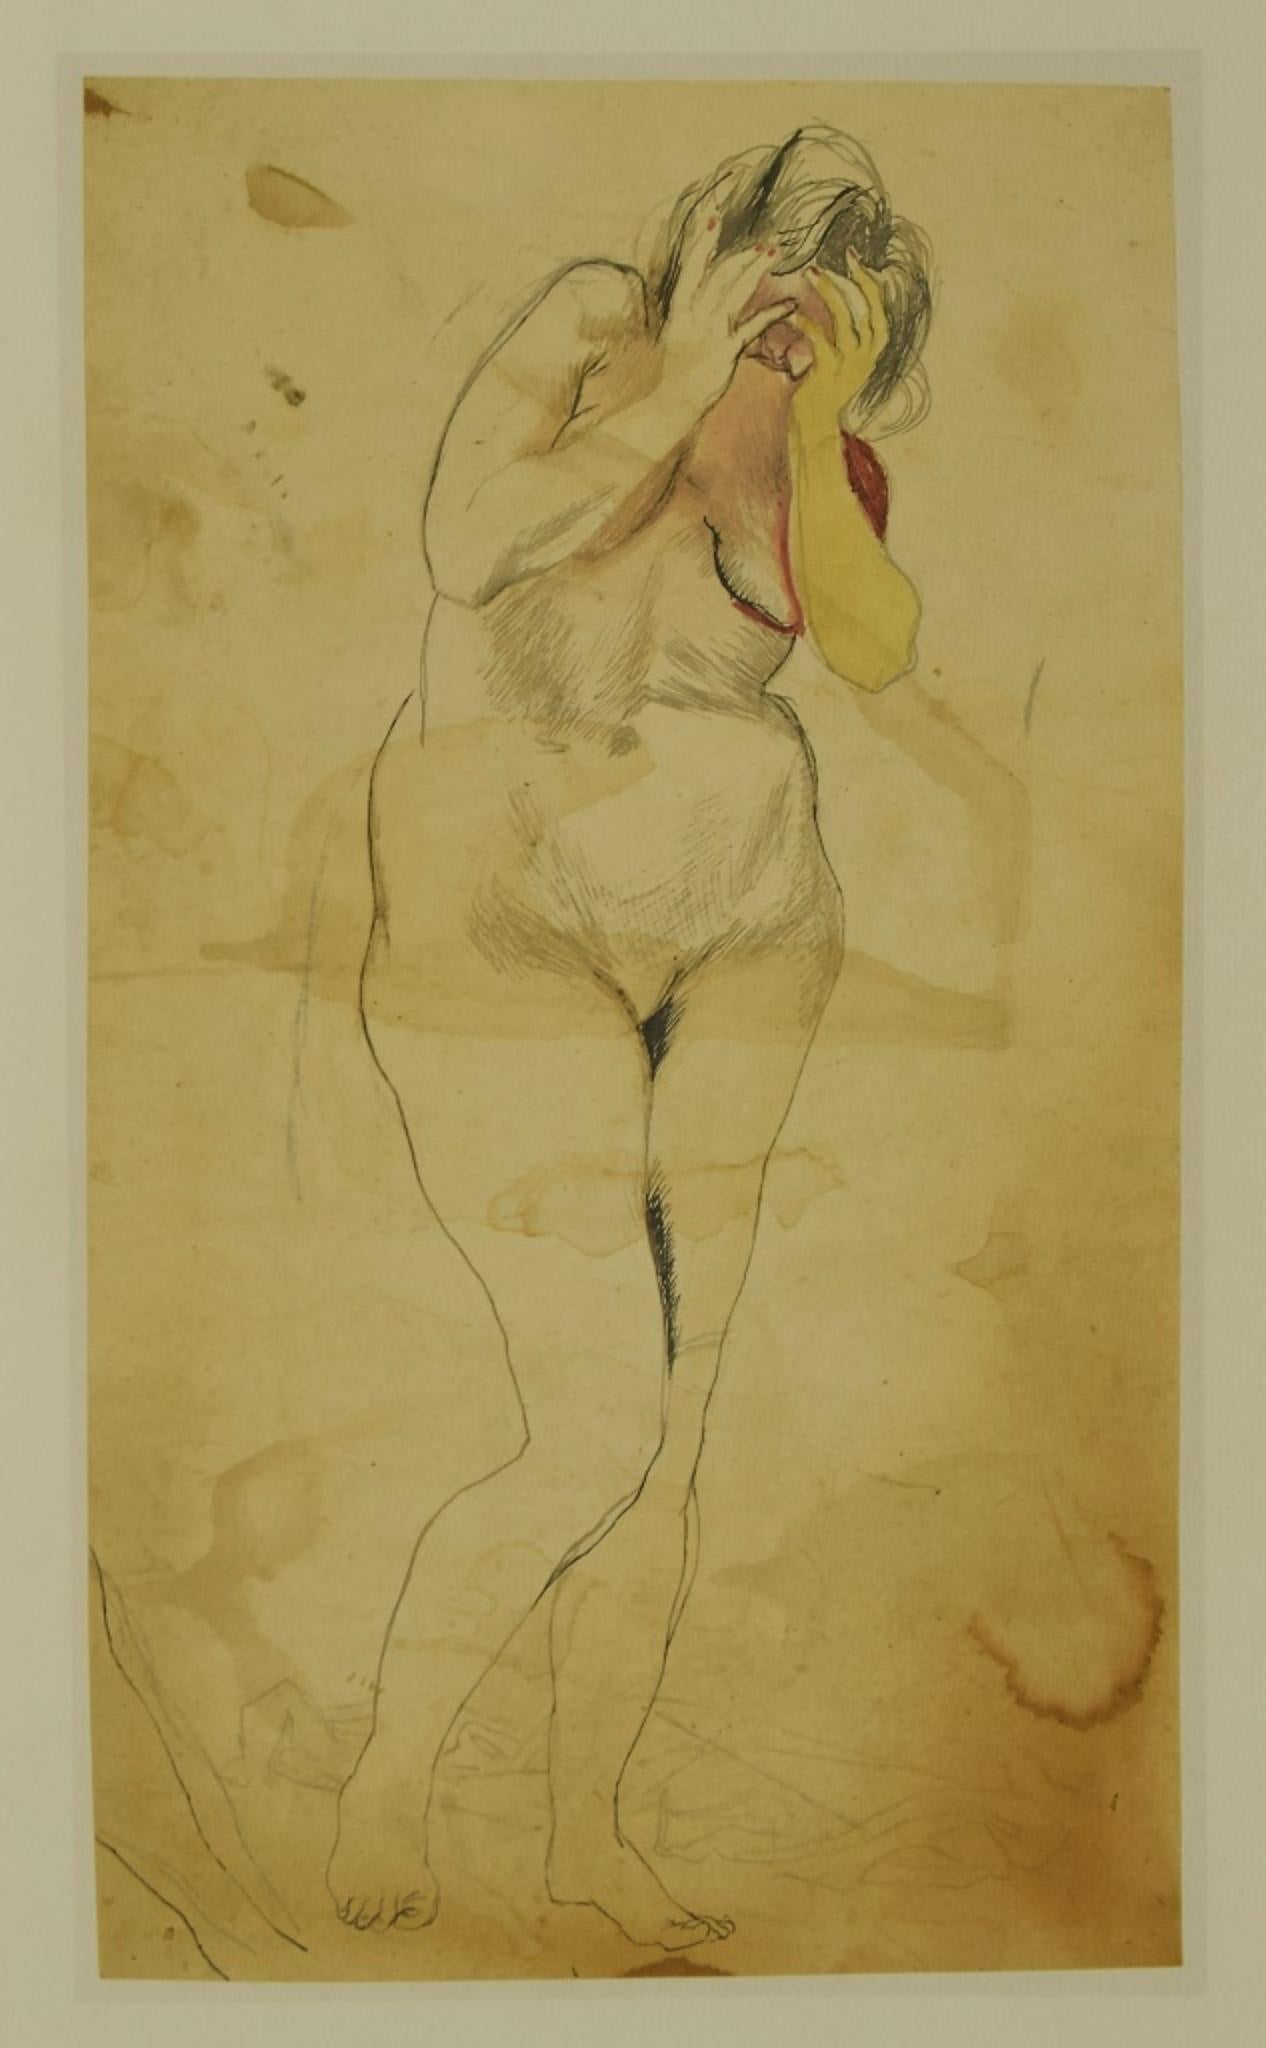 Naked Lady ist ein Original-Offset, das nach Renato Guttuso realisiert wurde.

Das Bild ist in sehr gutem Zustand, keine Signatur.

Renato Guttuso, geboren als Aldo Renato Guttuso (26. Dezember 1911 - 18. Januar 1987) war ein italienischer Maler und